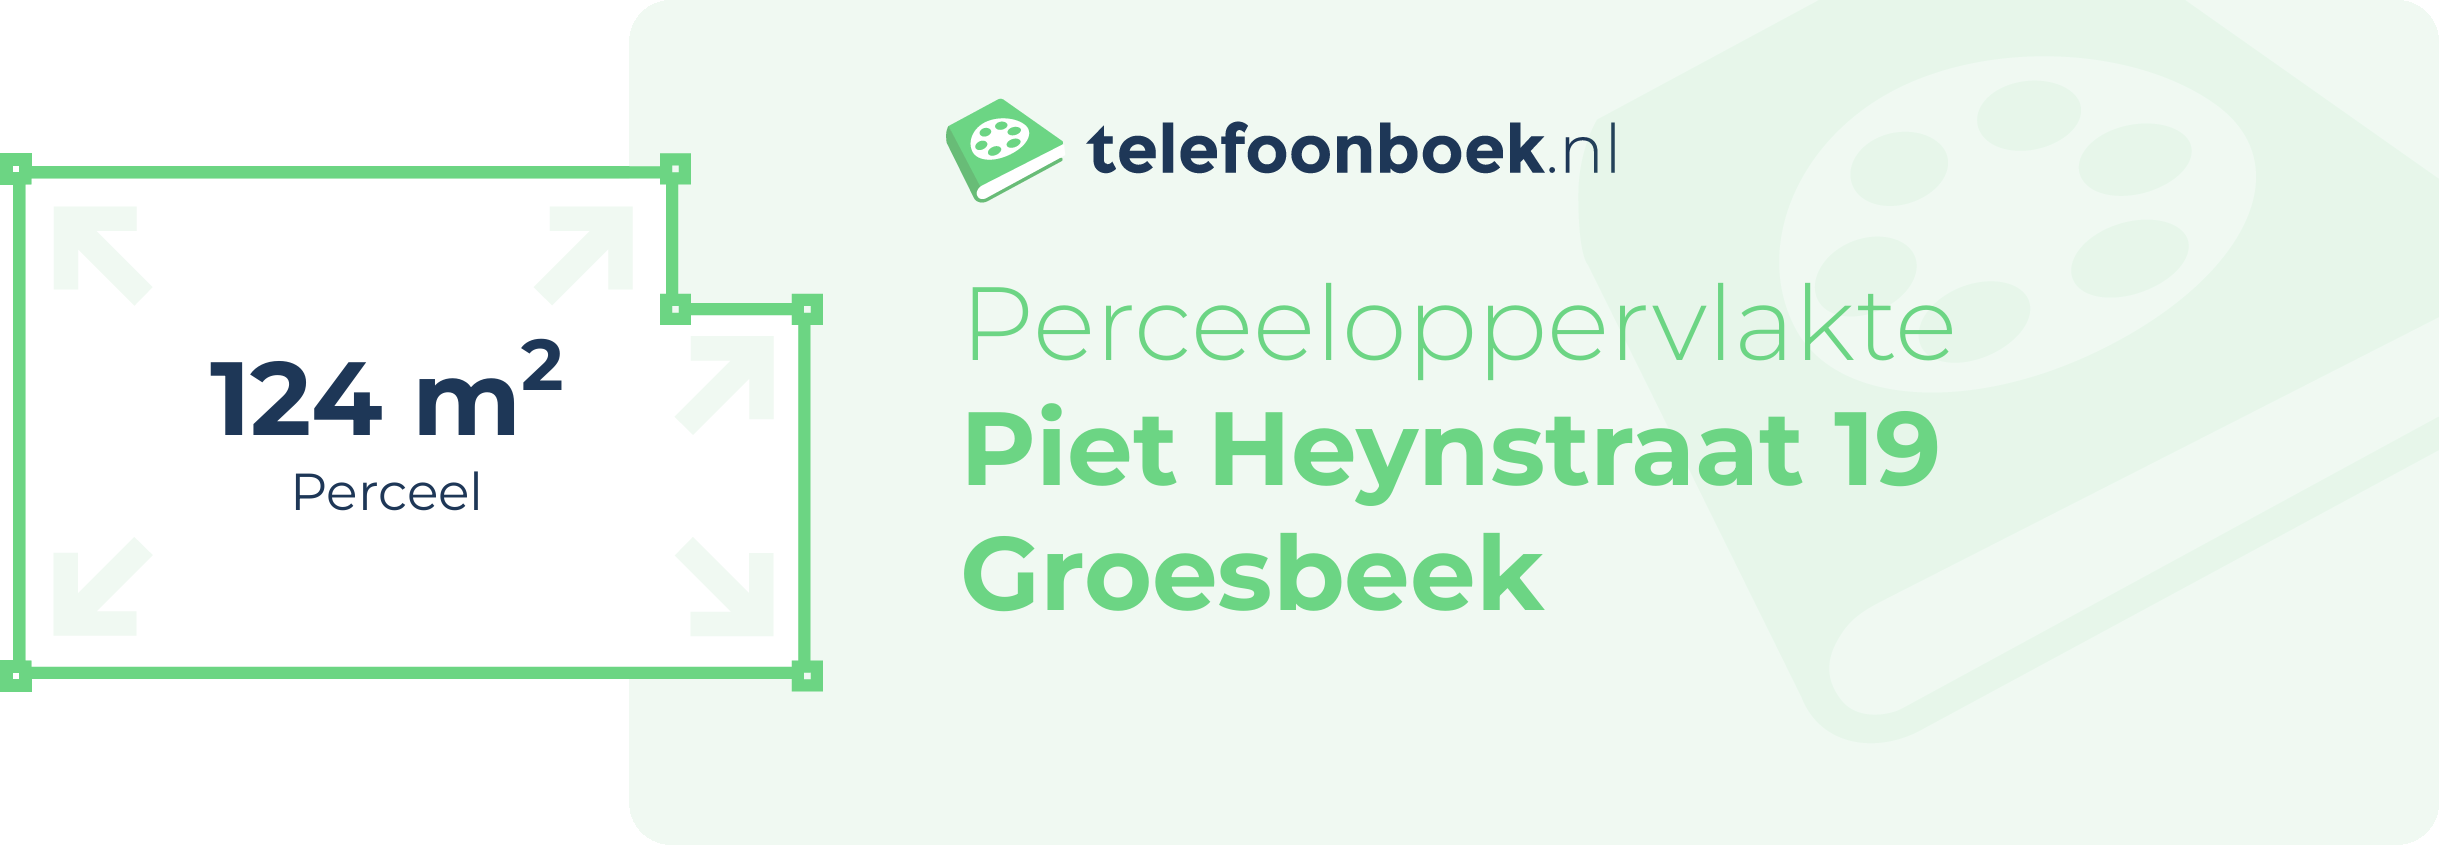 Perceeloppervlakte Piet Heynstraat 19 Groesbeek